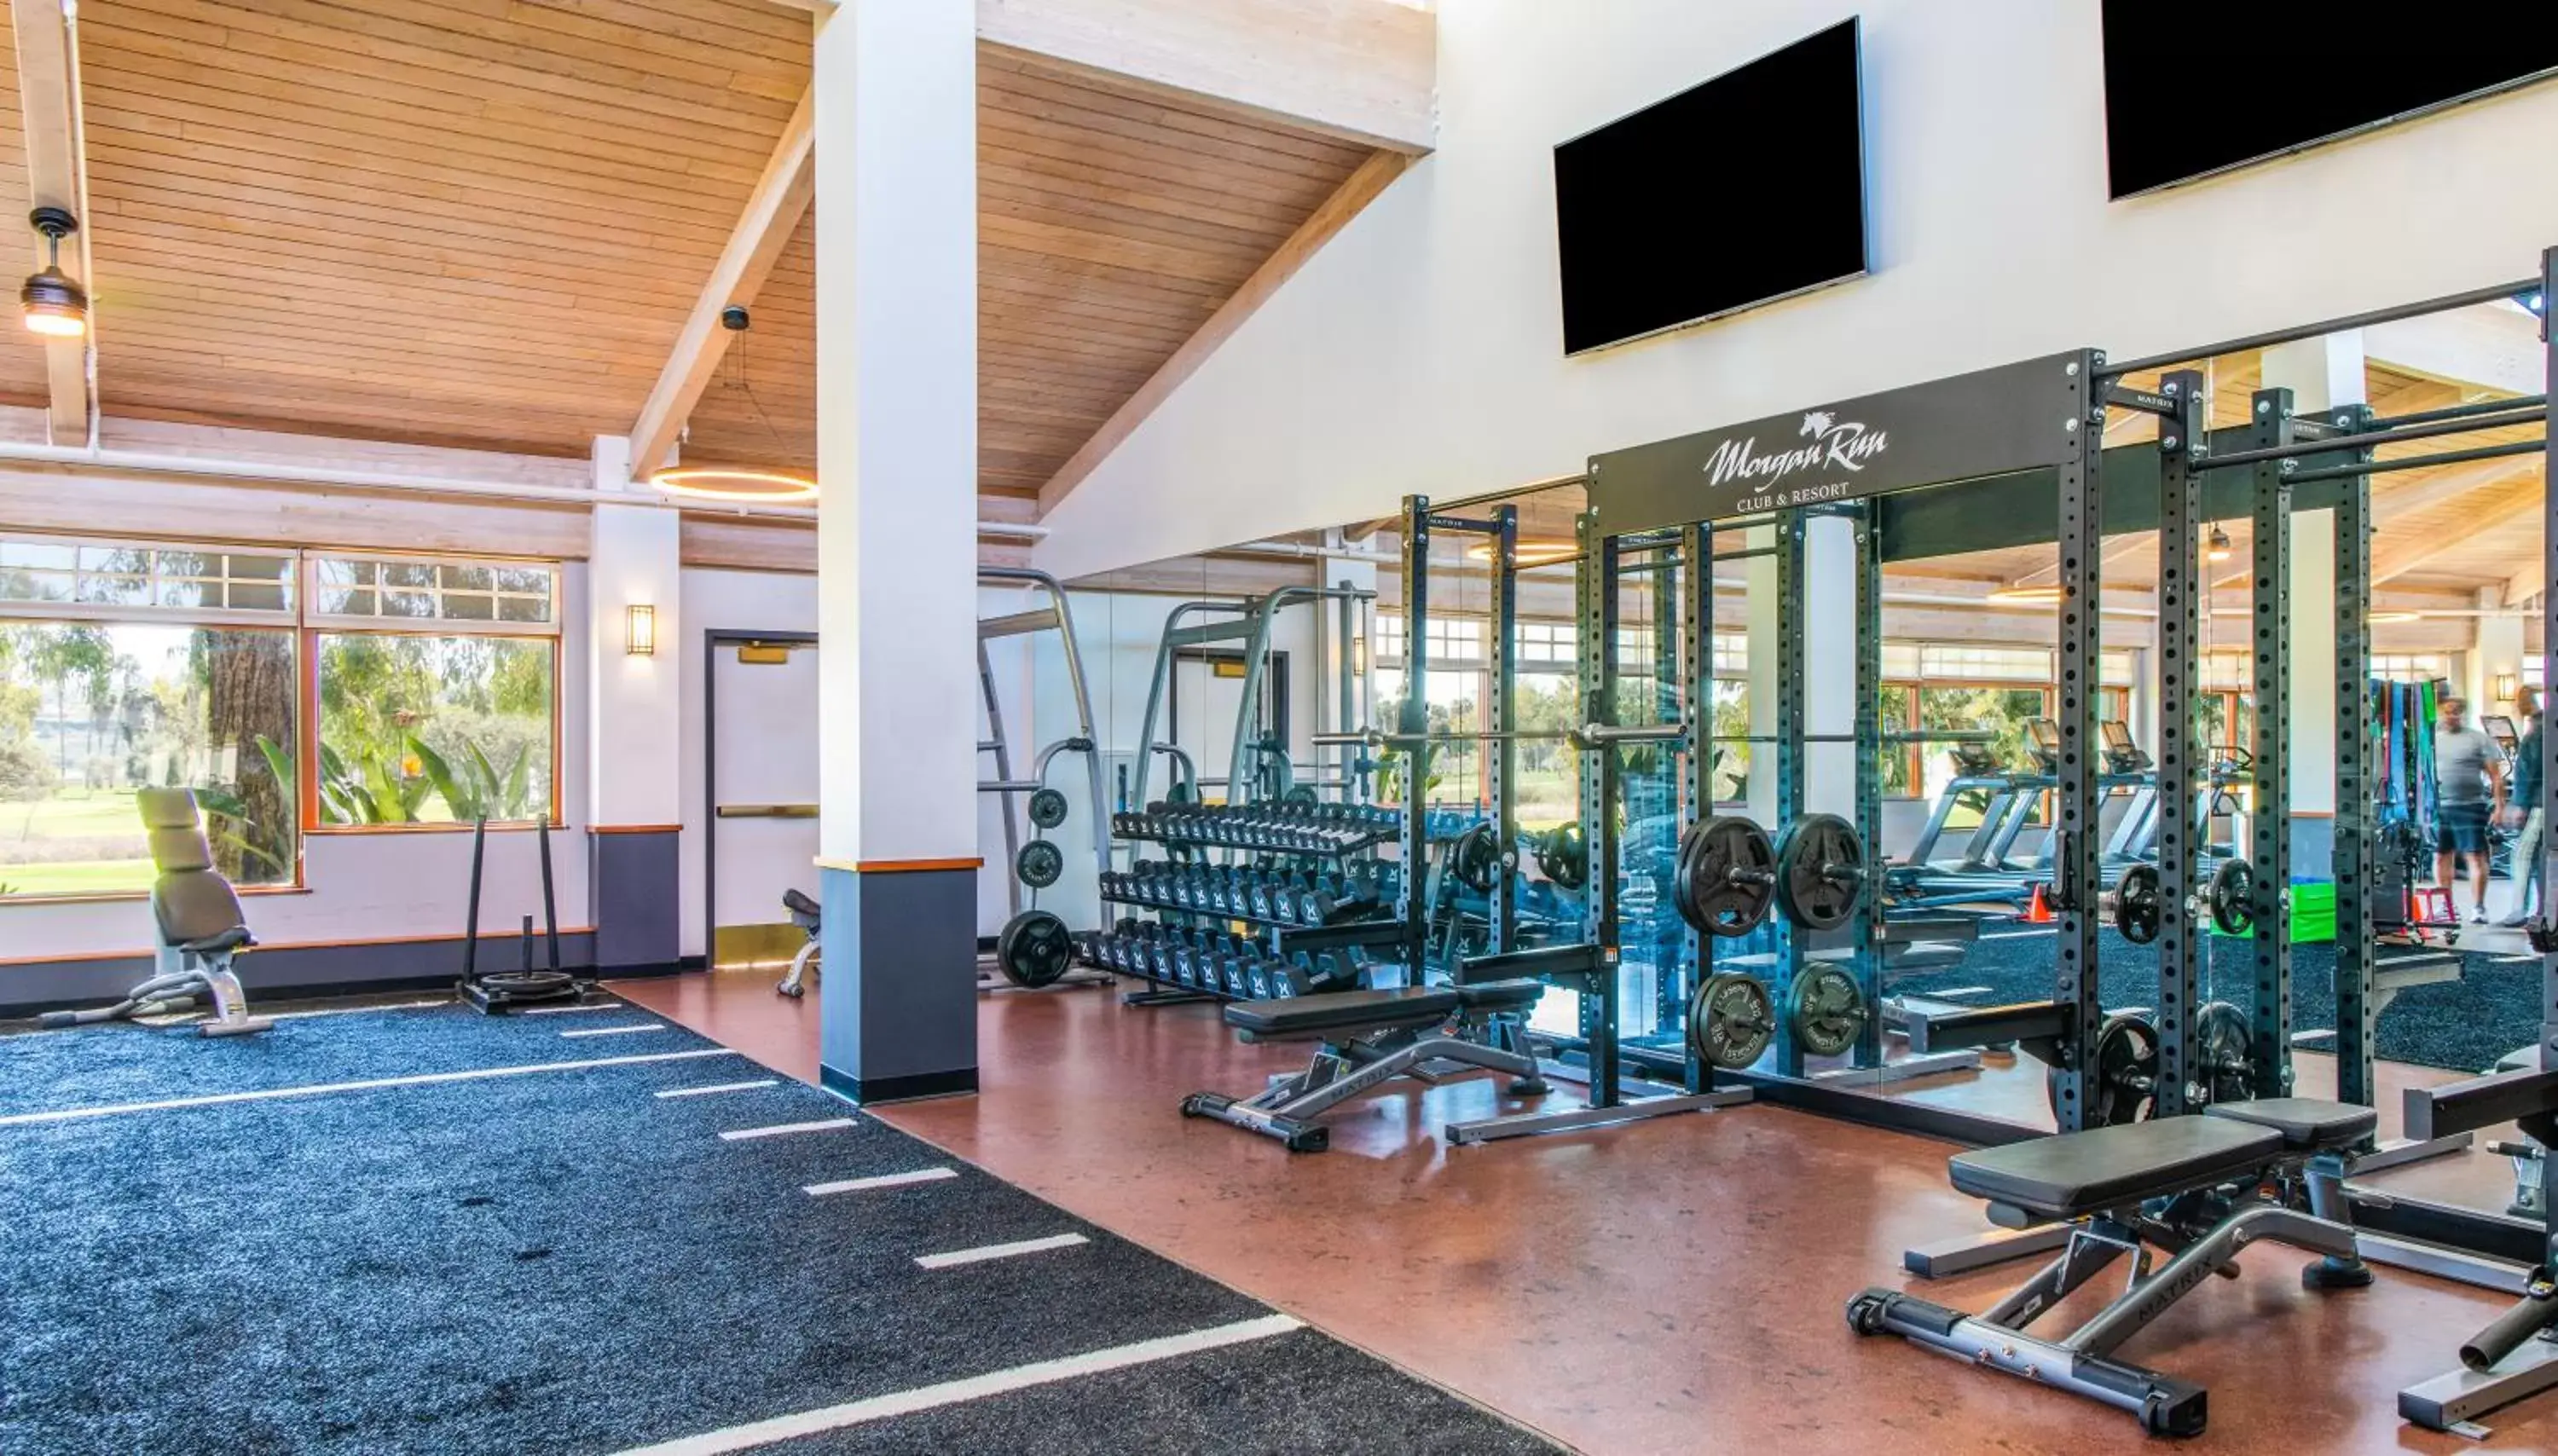 Fitness centre/facilities, Fitness Center/Facilities in Morgan Run Resort